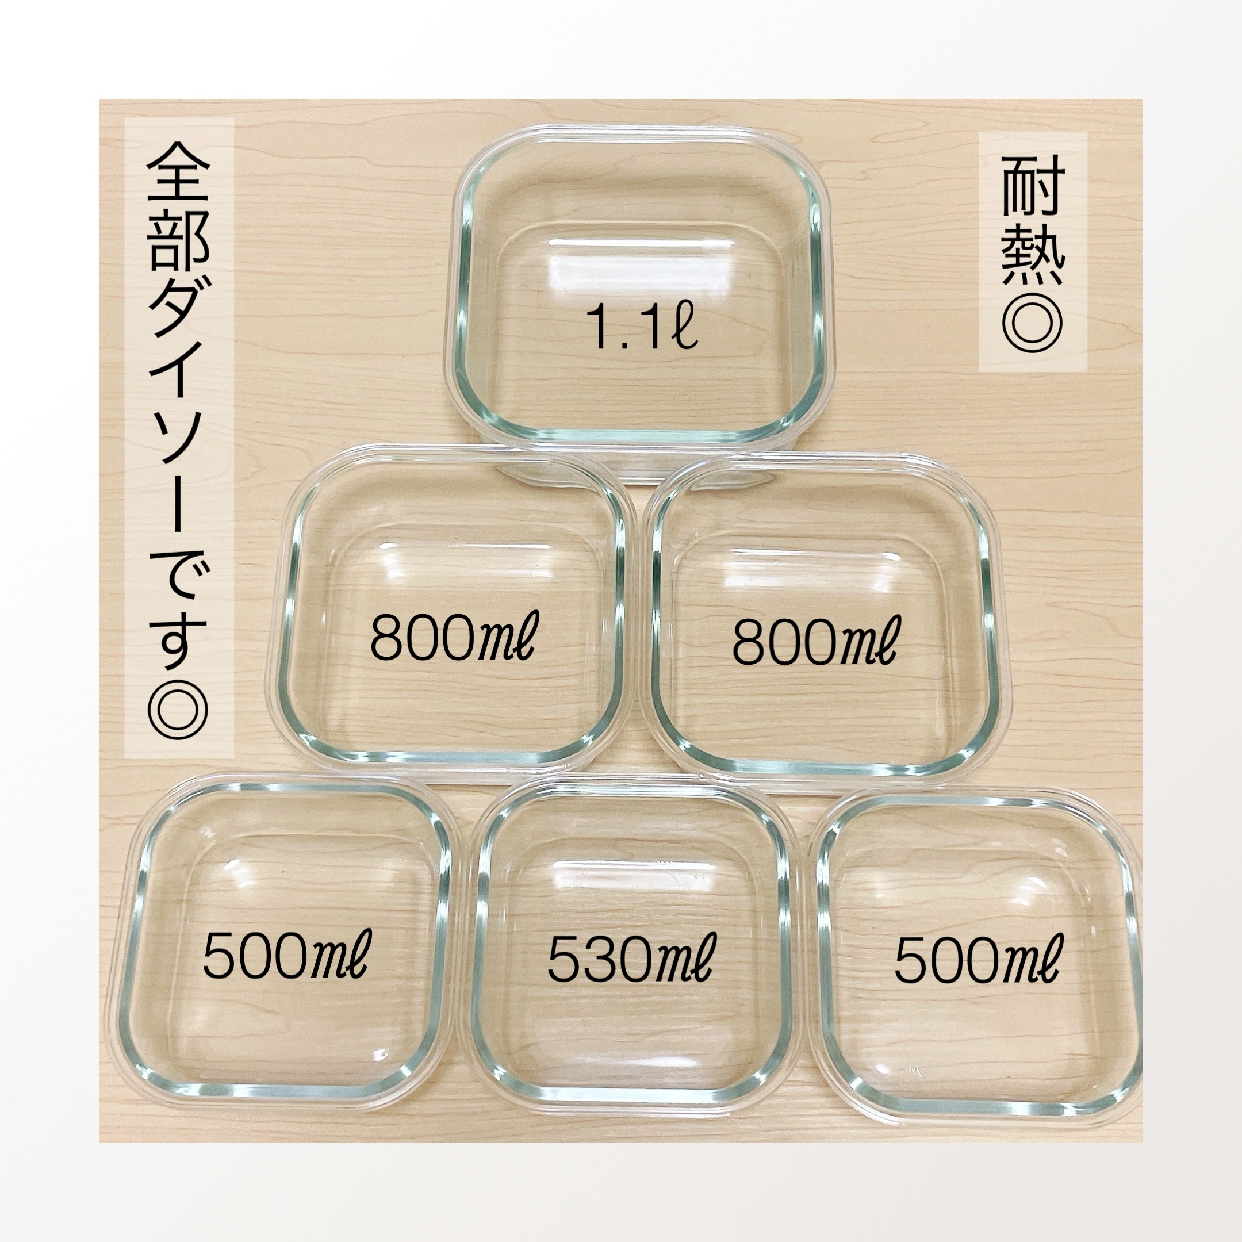 DAISO(ダイソー) 耐熱ガラス食器の良い点・メリットに関するちぃさんの口コミ画像2